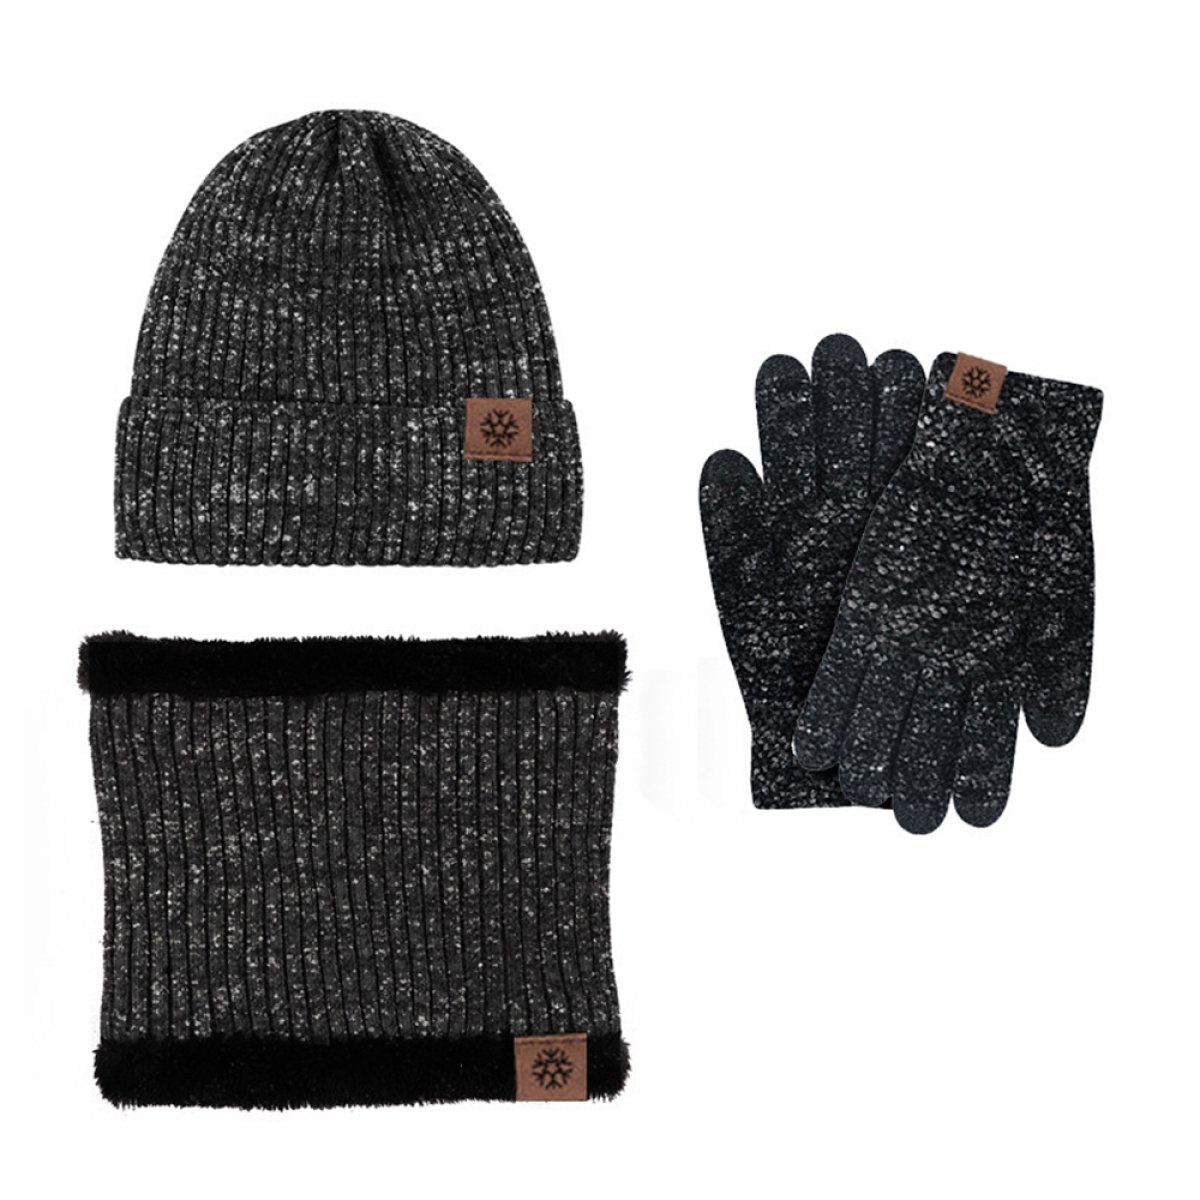 ZmdecQna Mütze & Schal Wintermütze Warm Strickmütze und Schal Handschuh Set für Universal schwarz+grau